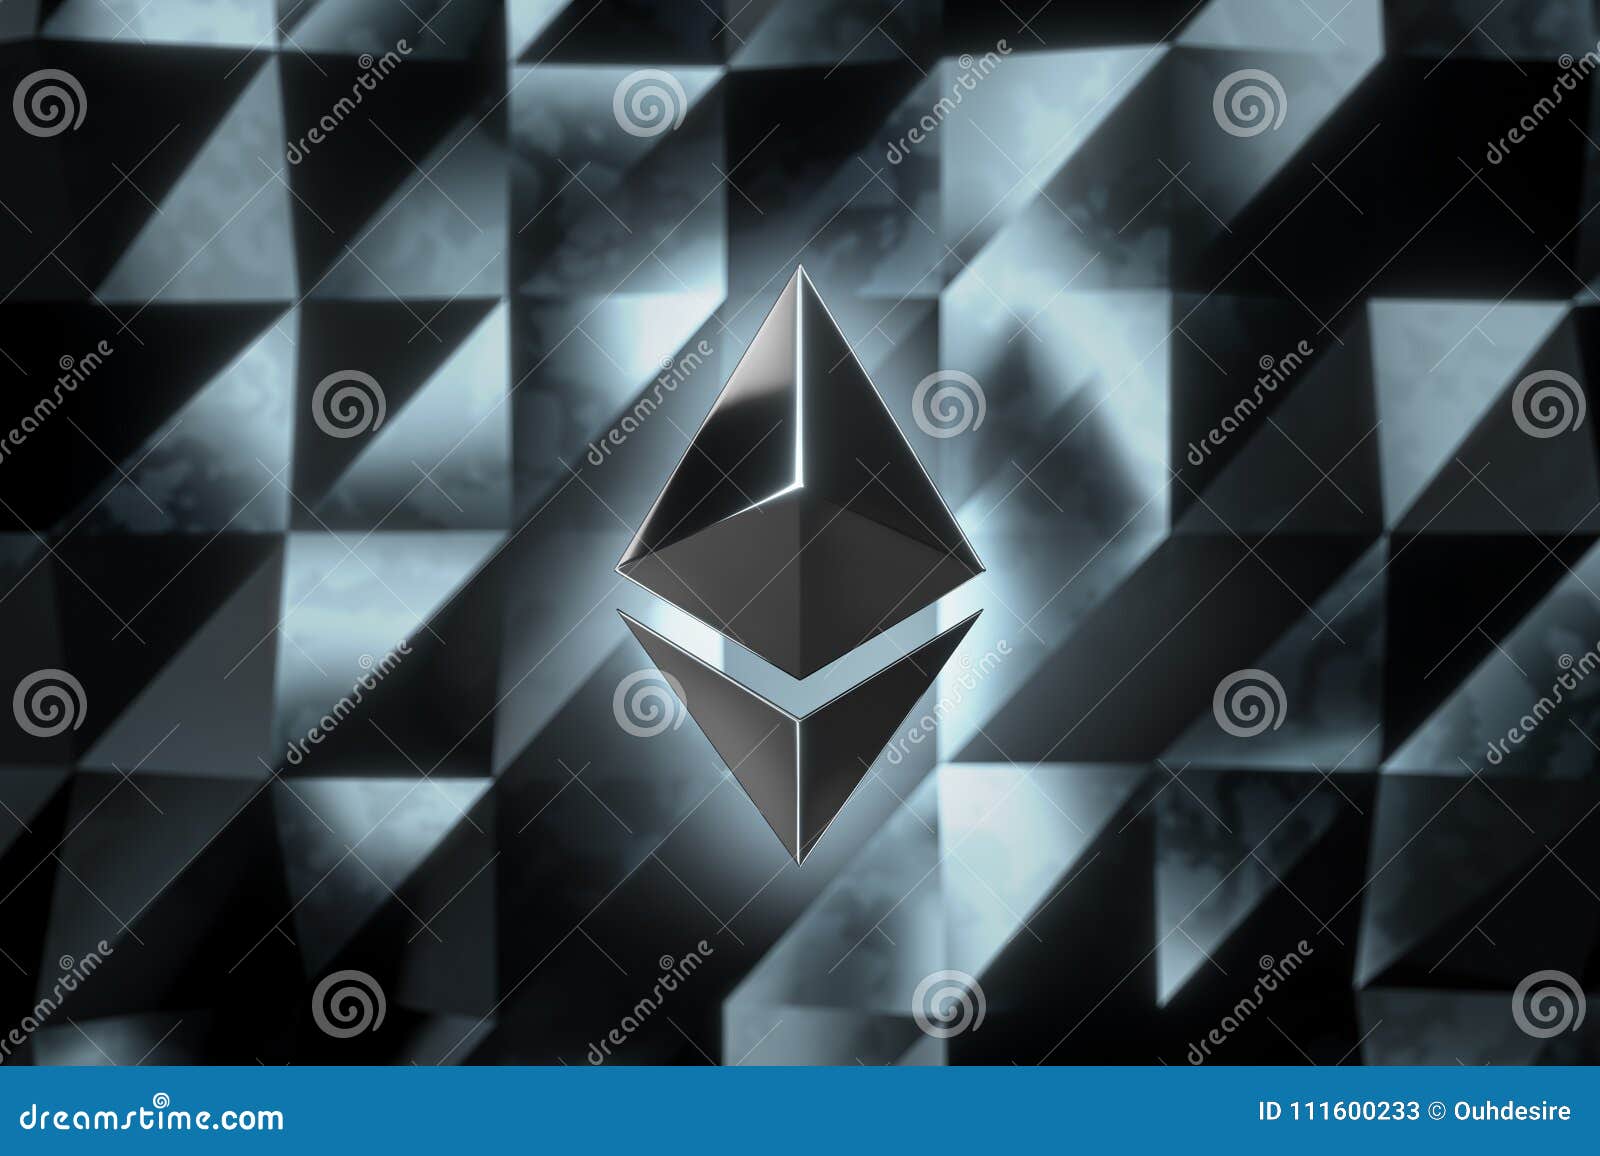 Ethereum Currency Logo 3D Illustration. Stock Illustration ...